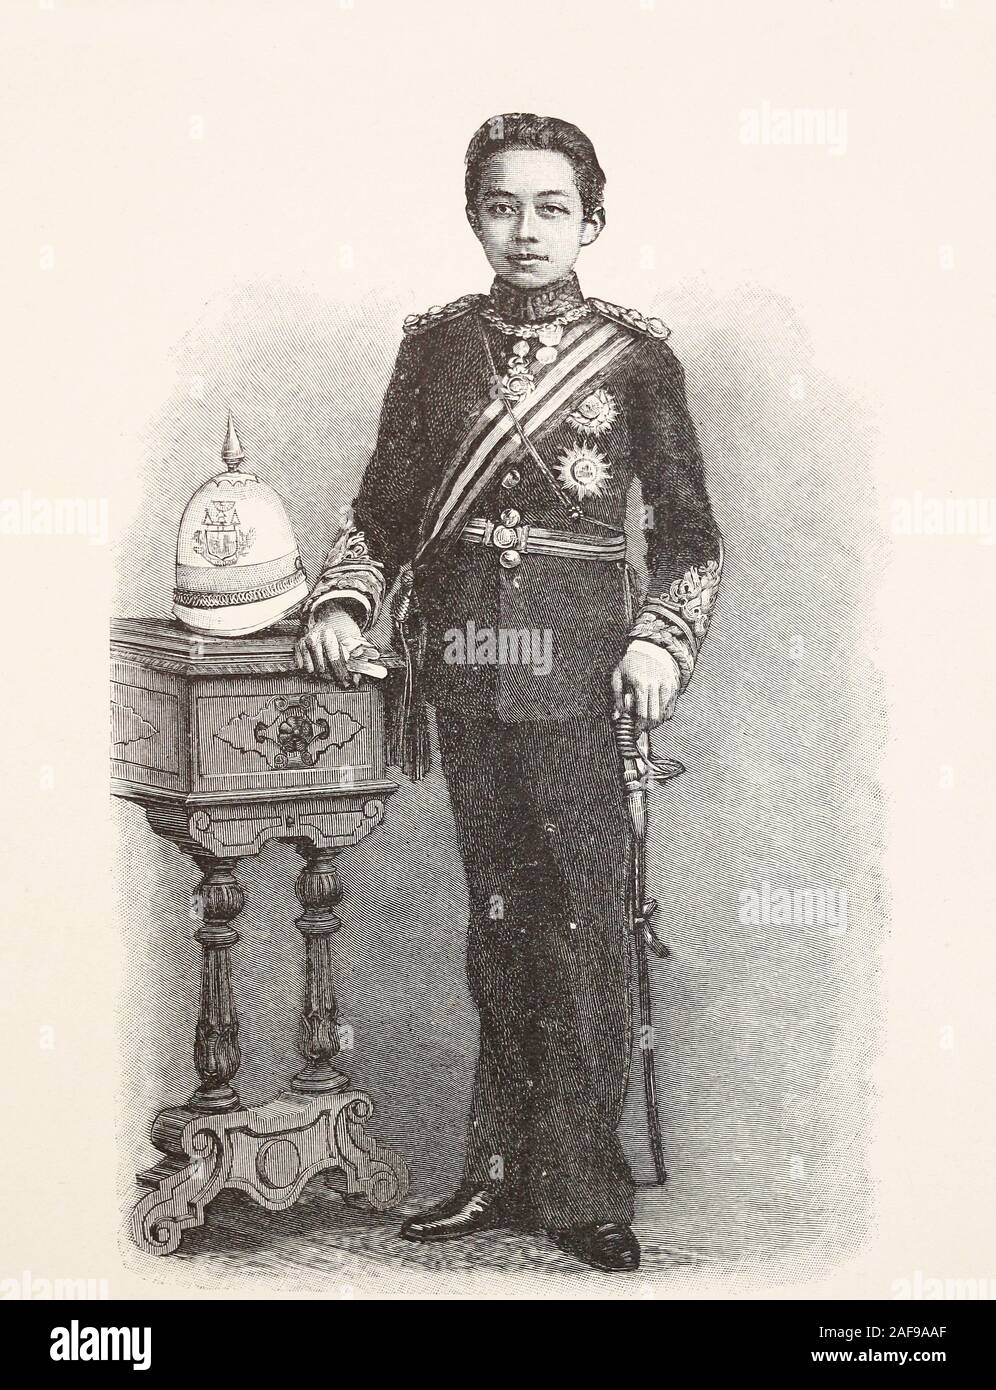 Il secondo figlio del re del Siam (Thailandia) Rama V Chulalongkorn (Crown Prince). Incisione della fine del XIX secolo. Foto Stock